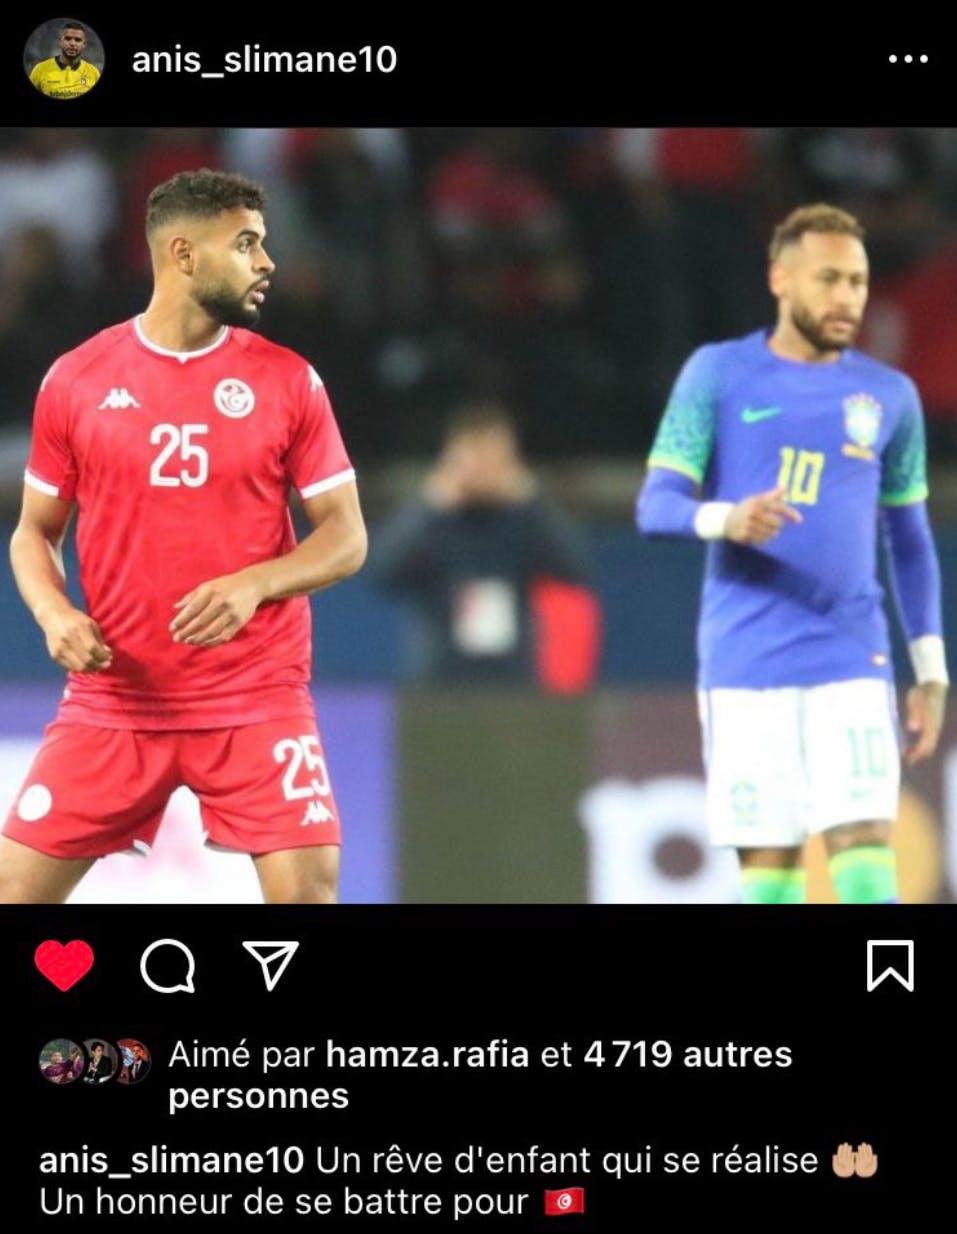 Anis Slimane har spillet 26 landskampe for Tunesien. Blandt andet en venskabskamp mod Brasilien, hvor han stod over for den brasilianske superstjerne Neymar.